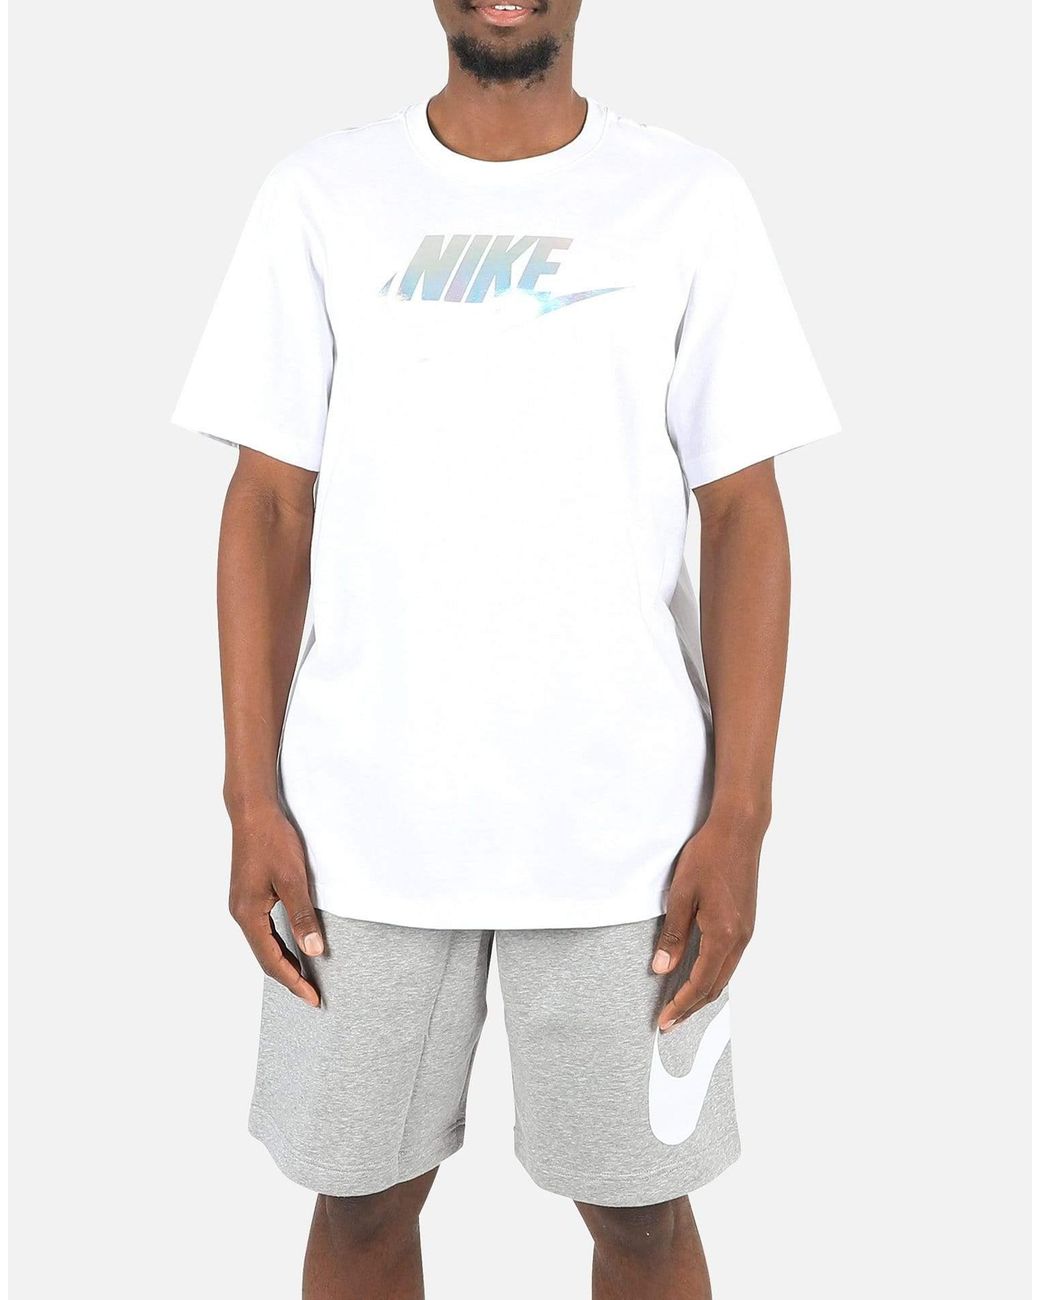 Nike Nsw Hbr Festival Tee in White for Men - Lyst